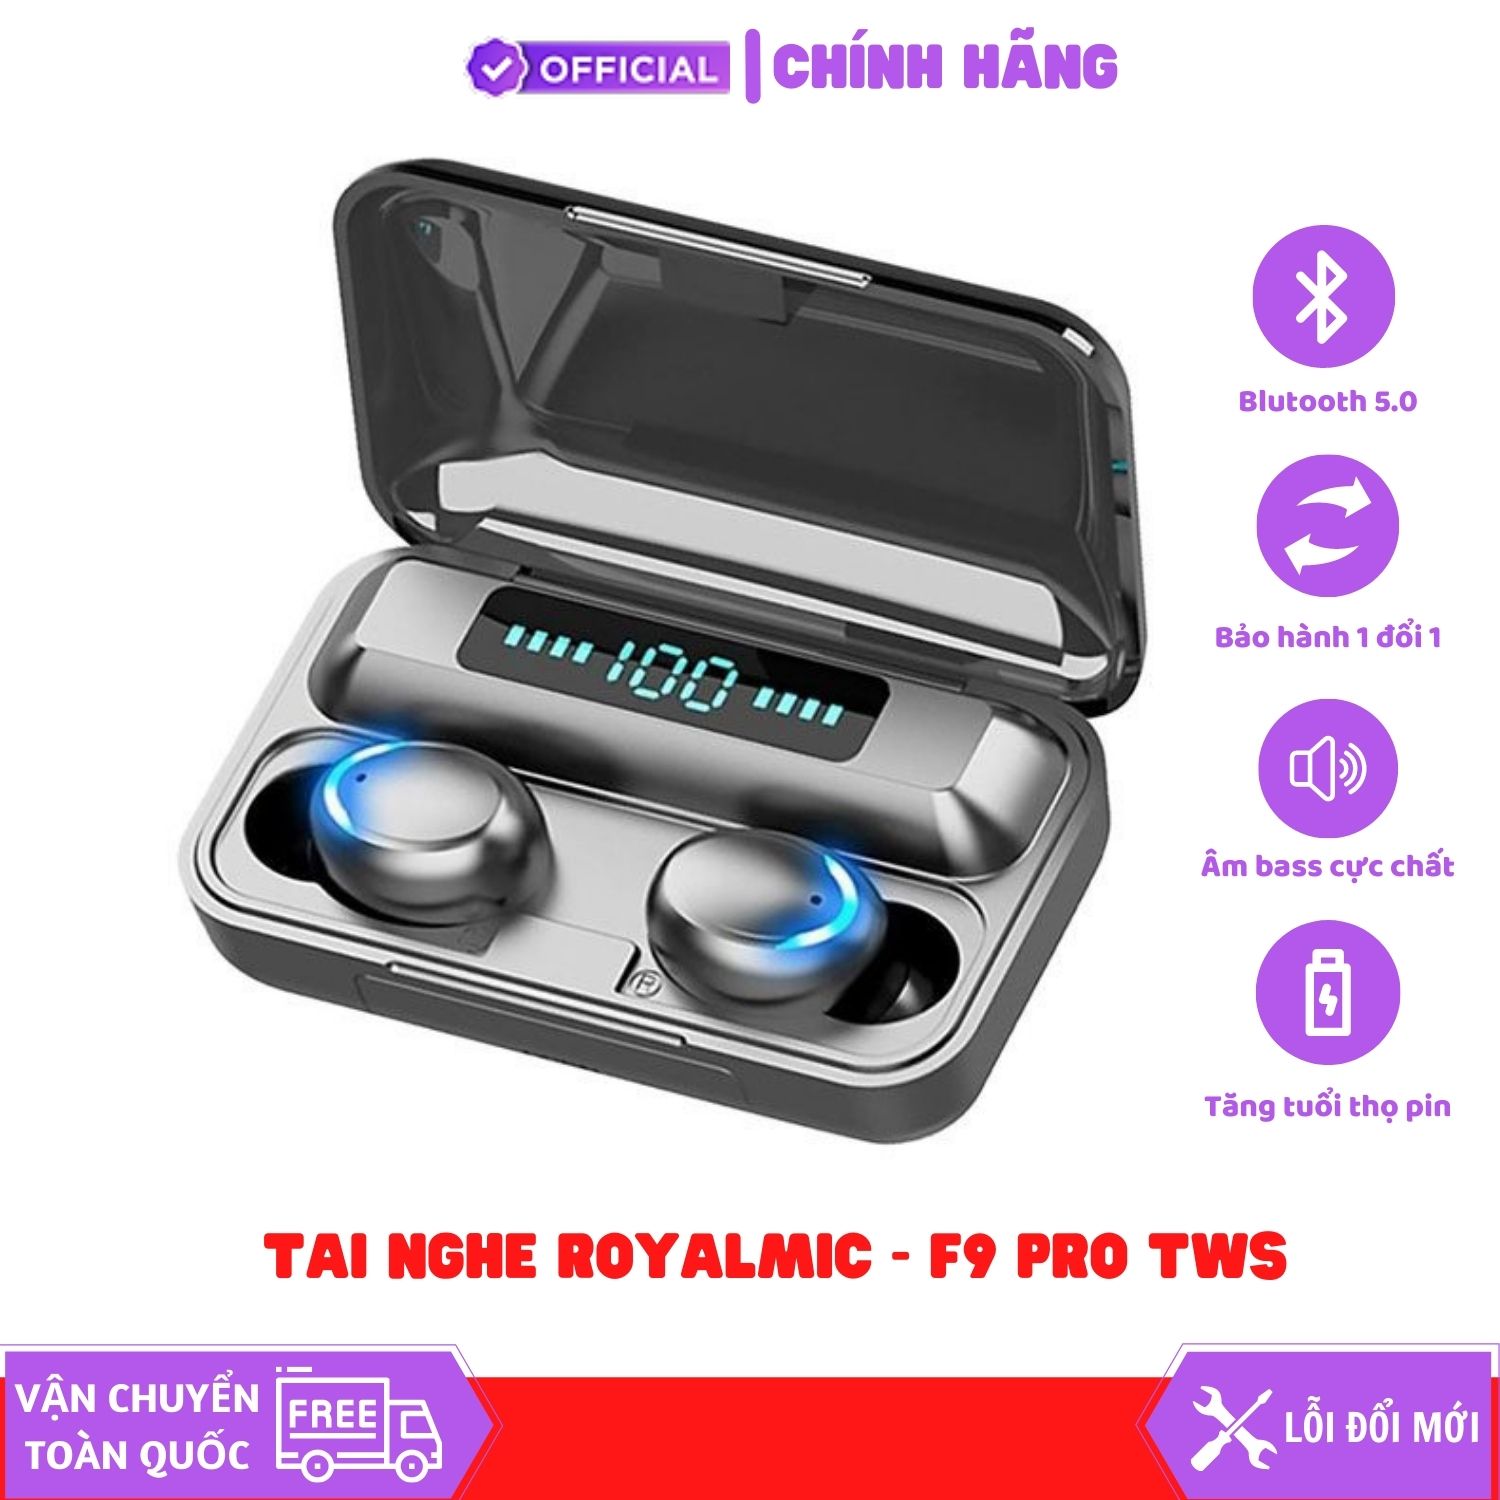 Tai Nghe Không Dây TWS ROYALMIC F9 Pro - Bluetooth 5.0 - Pin 600h - Kháng Nước, Kháng Bụi, Bass Khỏe - Hàng Chính Hãng